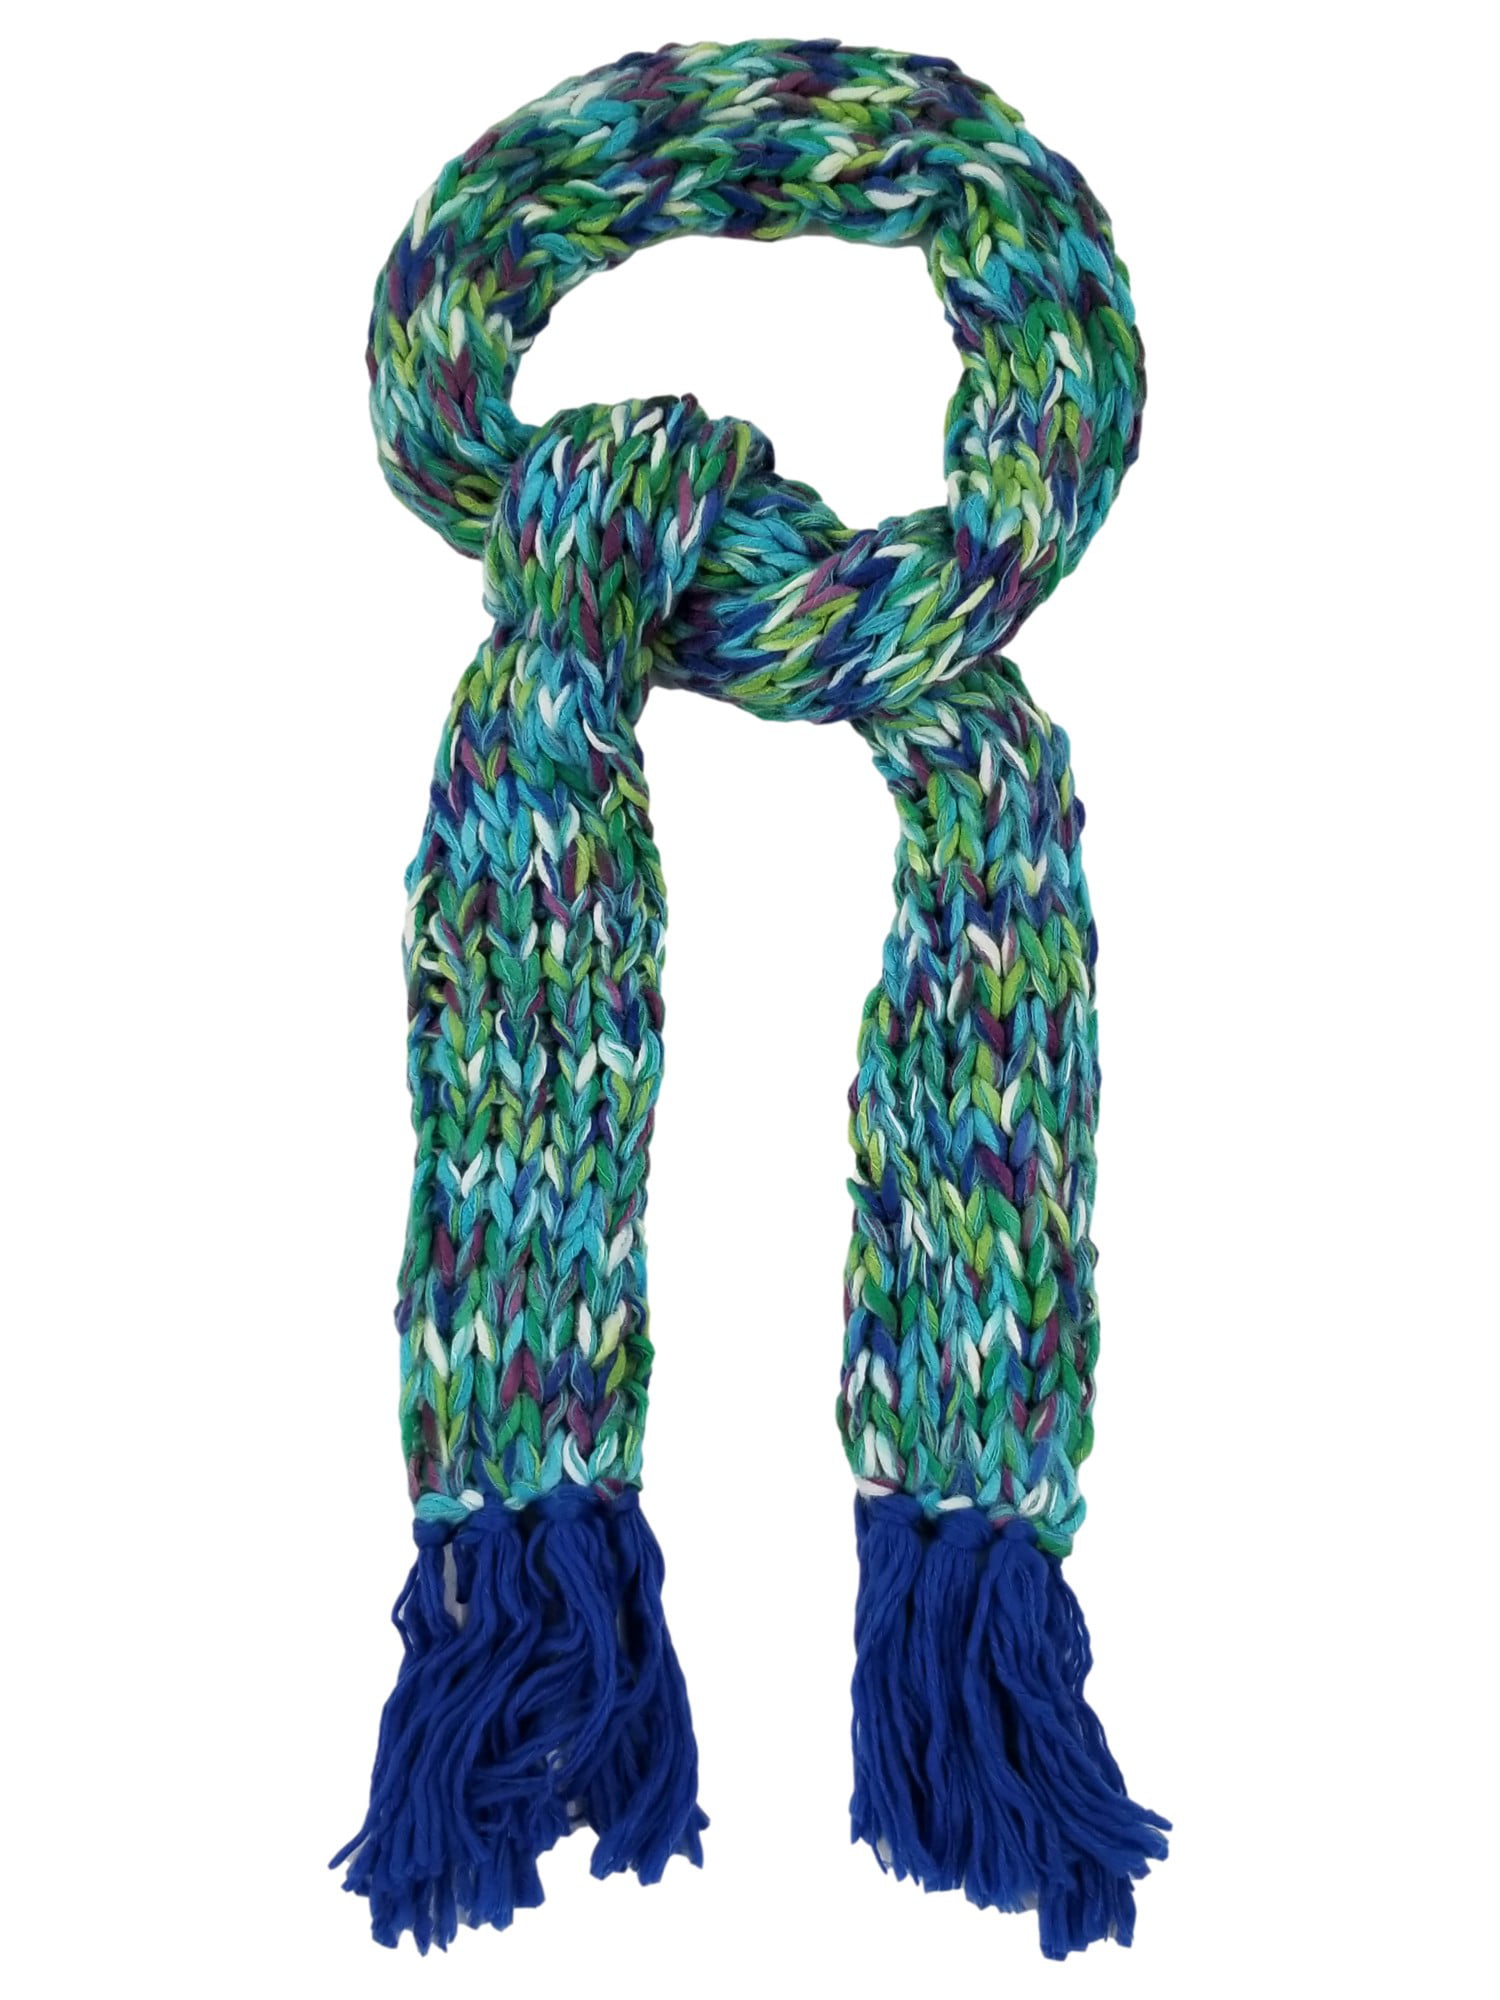 Colorful fun scarf